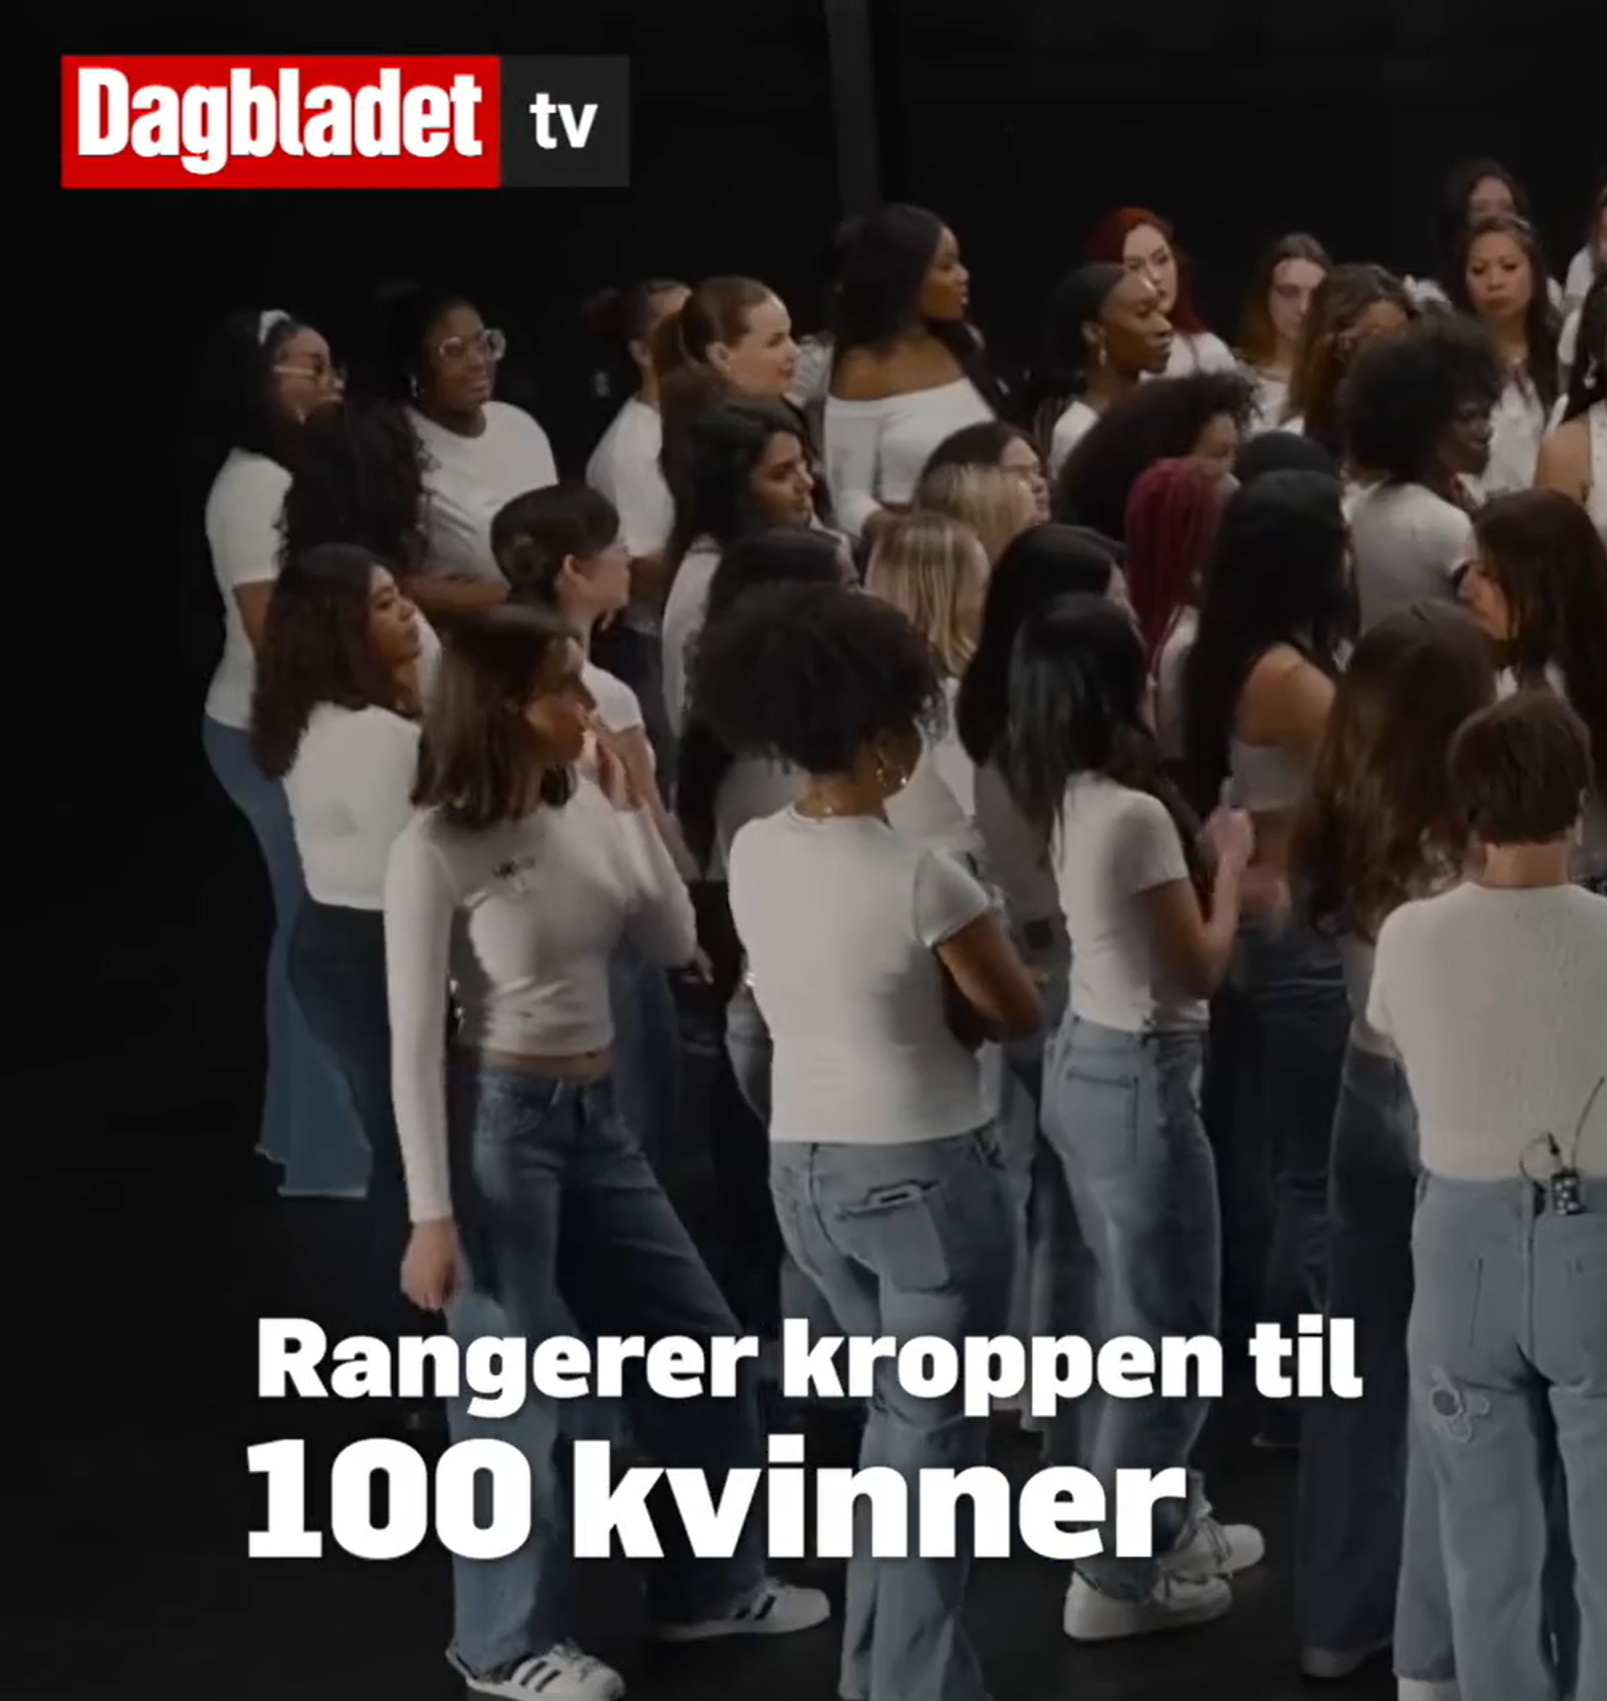 En gruppe kvinner står samlet, alle med hvit topp. Teksten sier: Rangerer kroppen til 100 kvinner.